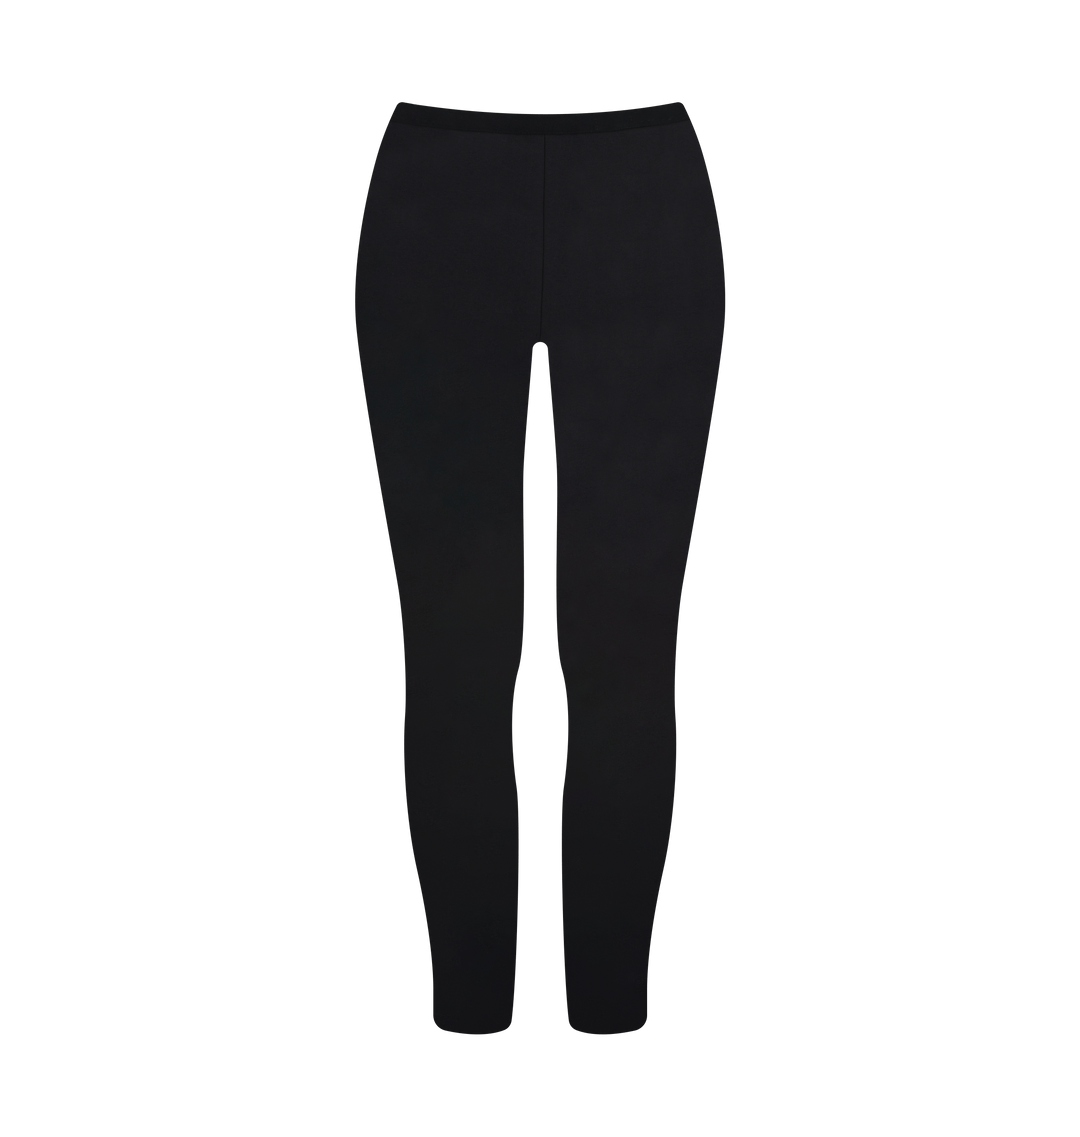 GulGuli Cotton Leggings Pack of 6 (Black,White,Royal Blue, Light